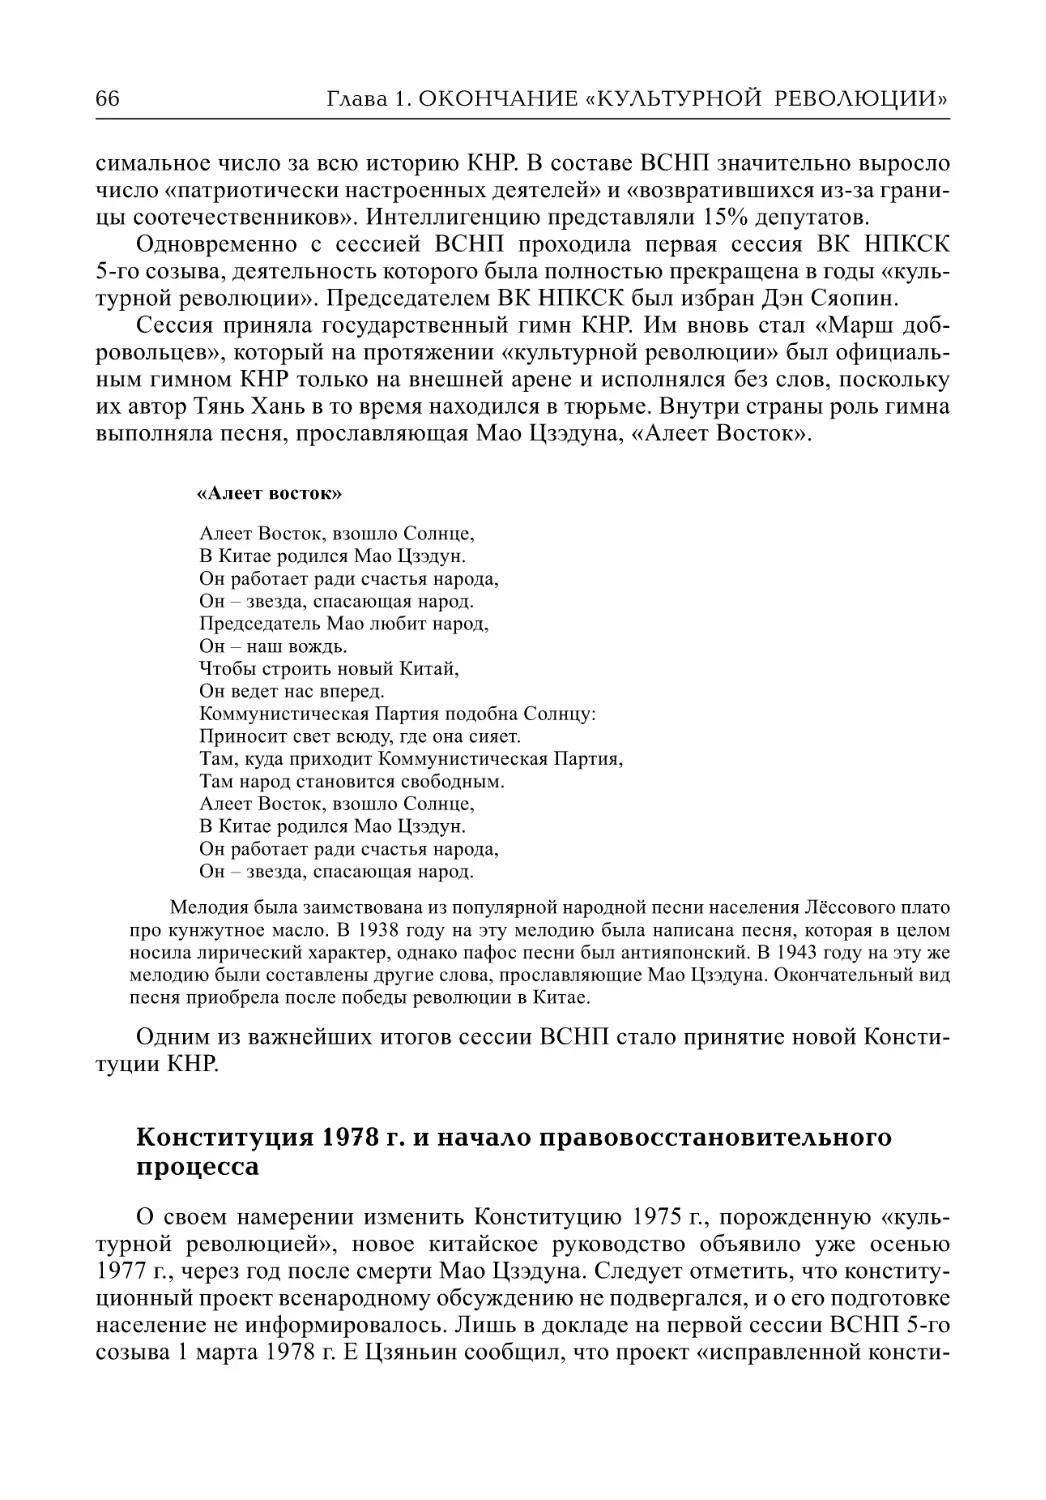 Конституция 1978 г. и начало правовосстановительного процесса (Л.М. Гудошников)